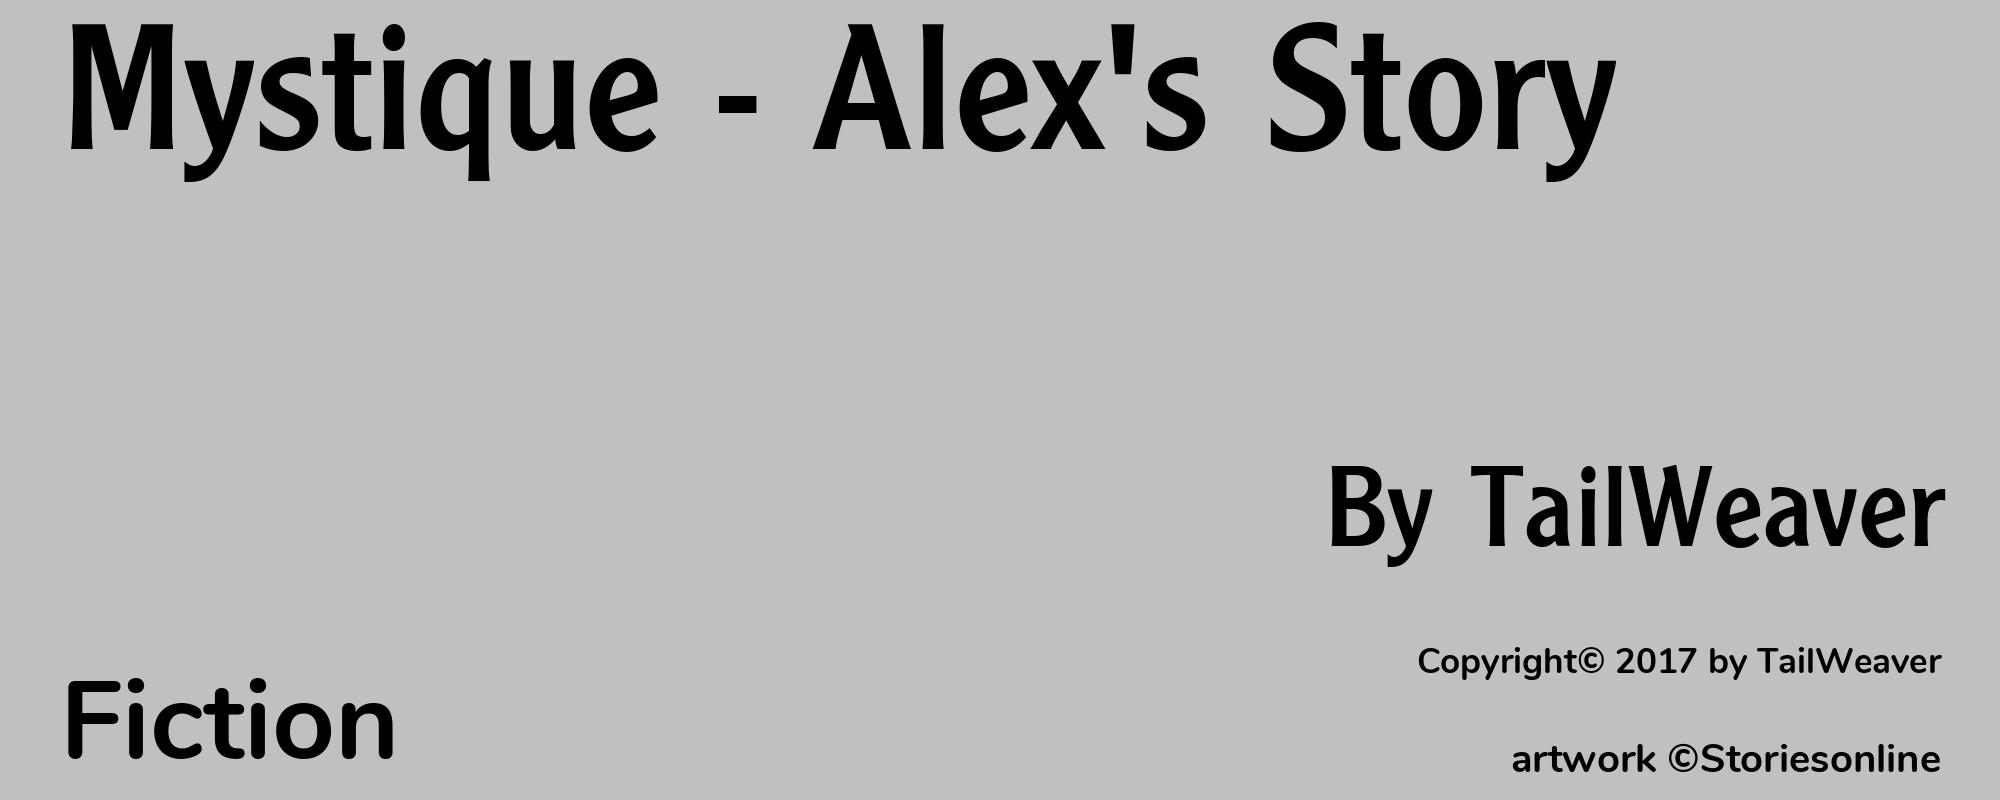 Mystique - Alex's Story - Cover